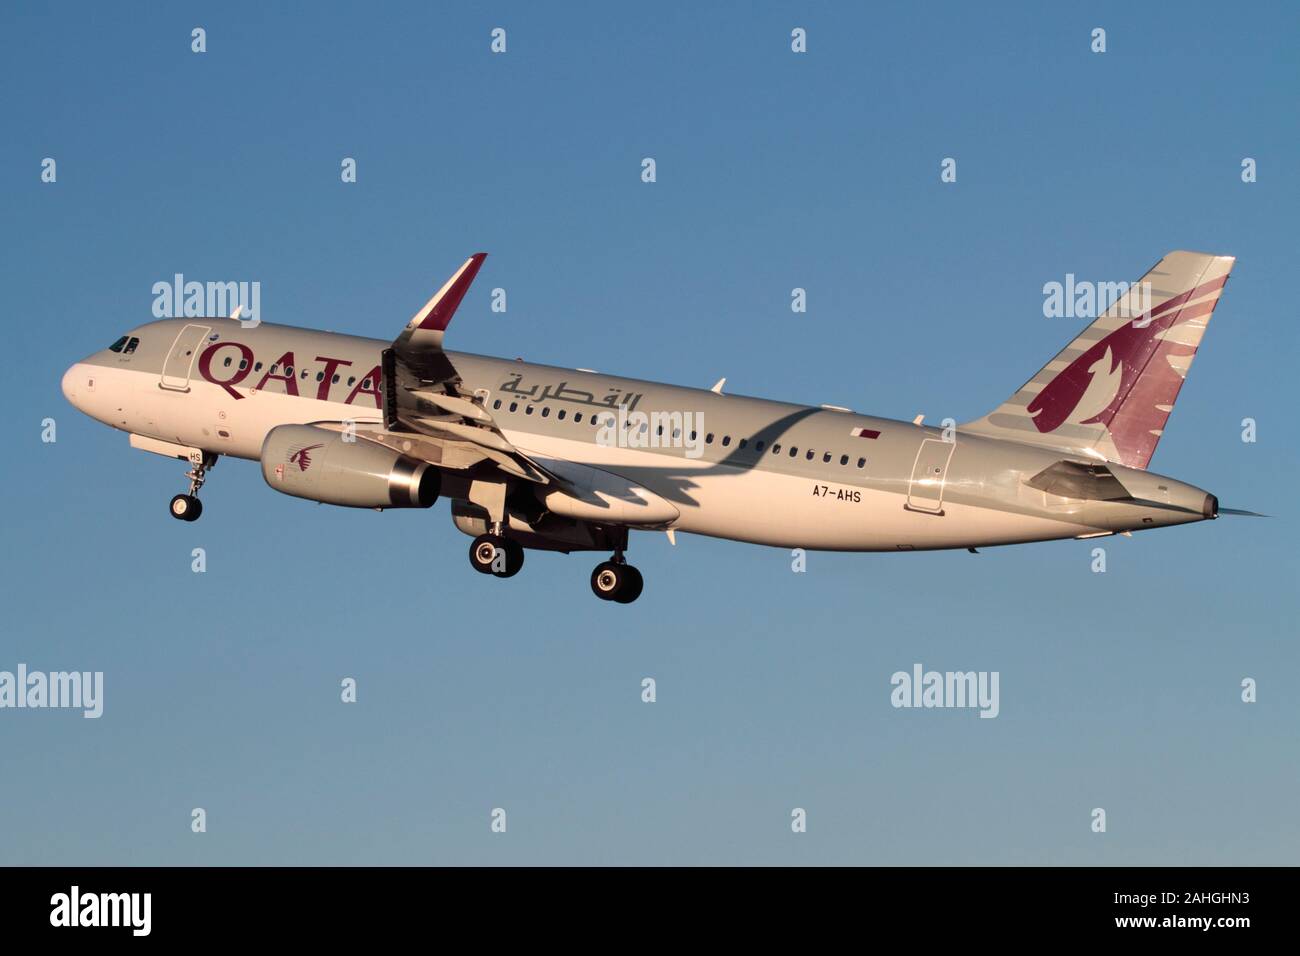 Qatar Airways Airbus A320-200 Passagierflugzeug, das beim Start gegen einen blauen Himmel klettert. Moderne Luftfahrt. Stockfoto